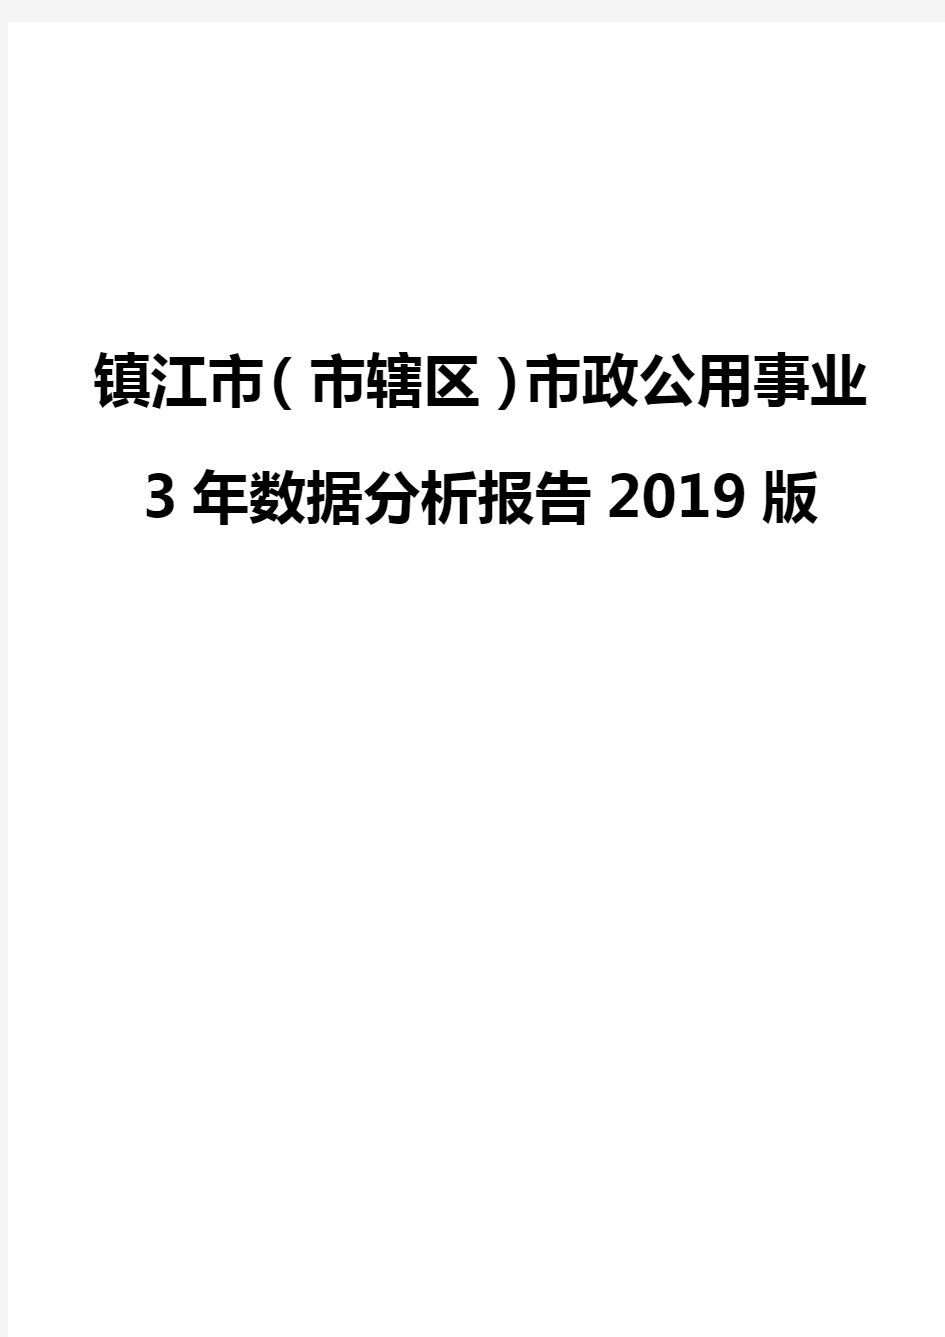 镇江市(市辖区)市政公用事业3年数据分析报告2019版